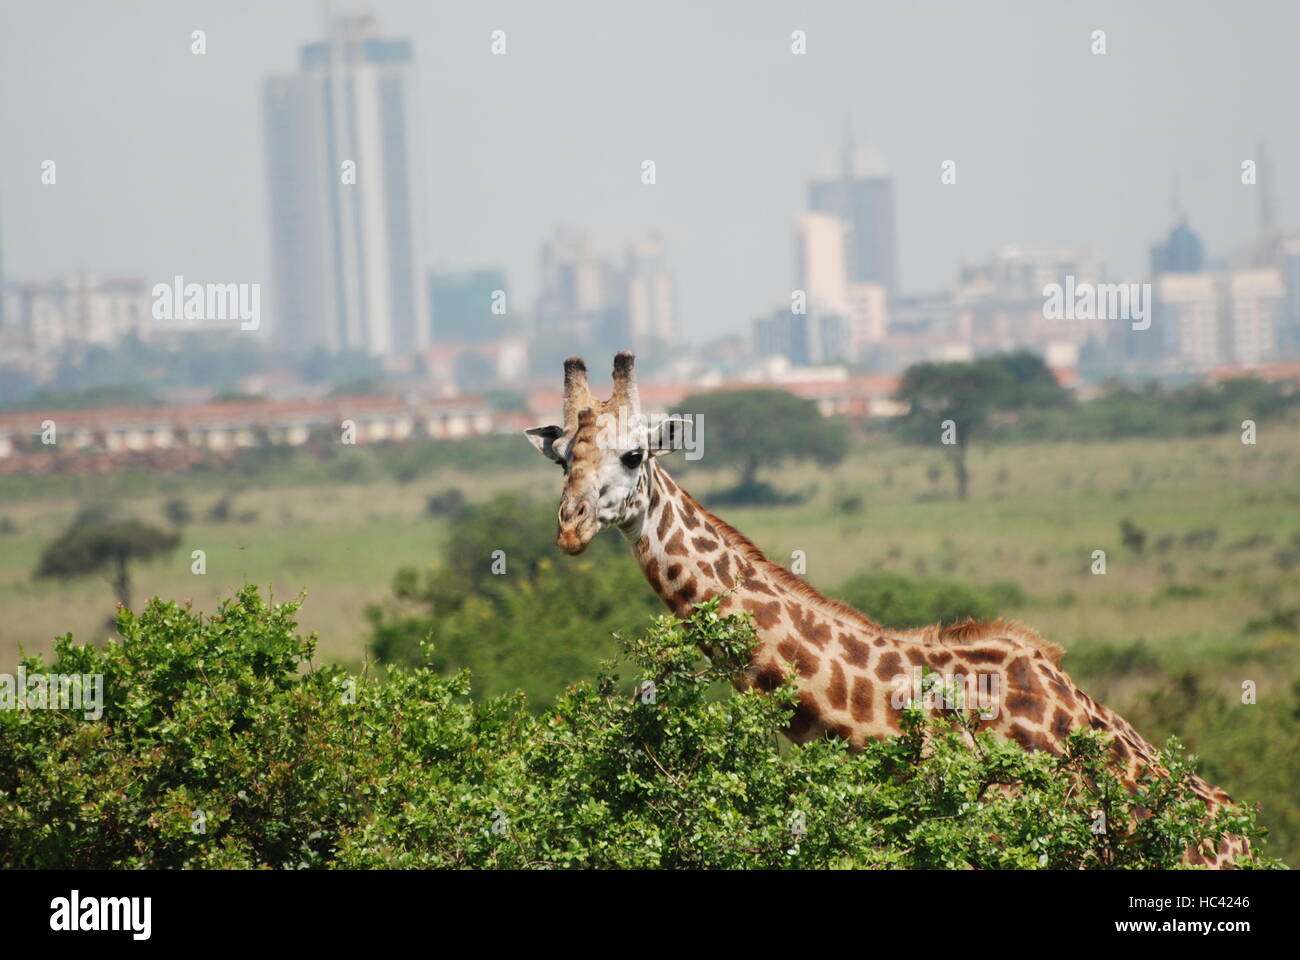 Nairobi, Kenia. 13th Dec, 2015. ACHTUNG: DIESER BEITRAG DARF NICHT VOR ABLAUF DER SPERRFRIST, 08. Dezember 00.01 UHR, VERÖFFENTLICHT WERDEN! ARCHIV - Eine Giraffe ist am 13.12.2015 im Nairobi National Park zu sehen. In den letzten Jahren ist Kenias Hauptstadt Nairobi bis unmittelbar an die Parkgrenzen herangewachsen. (Zu dpa 'Naturschützern warnen: Giraffen vom Aussterben bedroht) Foto: Thomas Burmeister/dpa/Alamy Live News Stock Photo